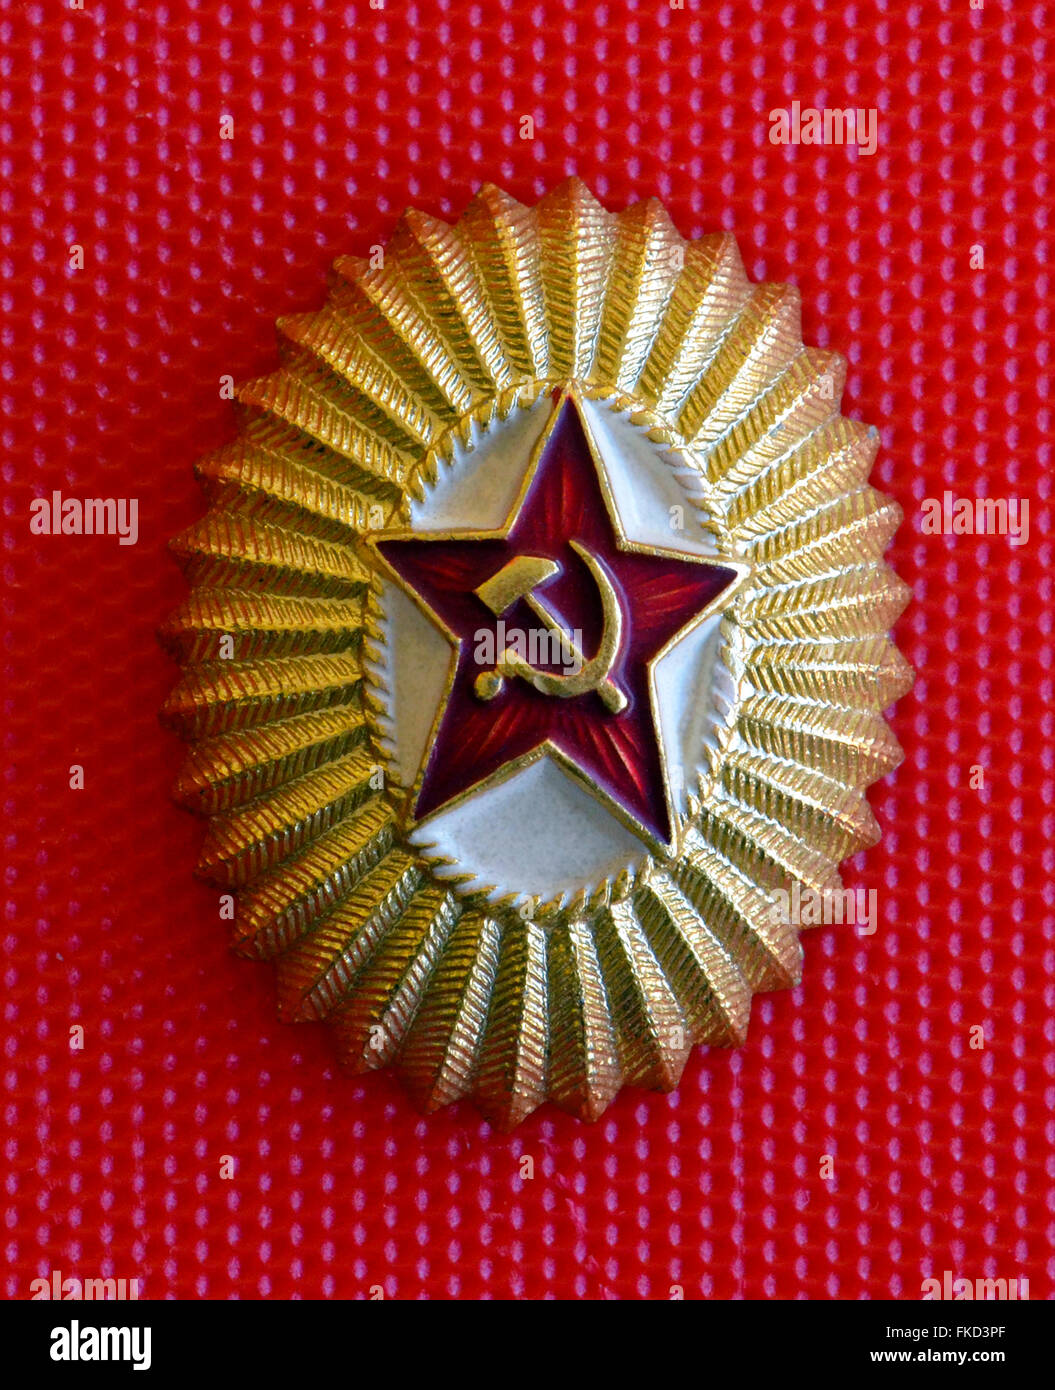 Un badge populaires de l'Union soviétique montre une étoile rouge avec la faucille et le marteau, un symbole communiste créé pour la révolution russe de 1917. Il a été donné à un visiteur américain dans l'URSS (Union des Républiques socialistes soviétiques) en 1962 pendant la guerre froide. Cet ovale en métal léger mesures emblème 1-3/16 pouces de la dimension court par 1-7/16 pouces dans la longueur. Banque D'Images